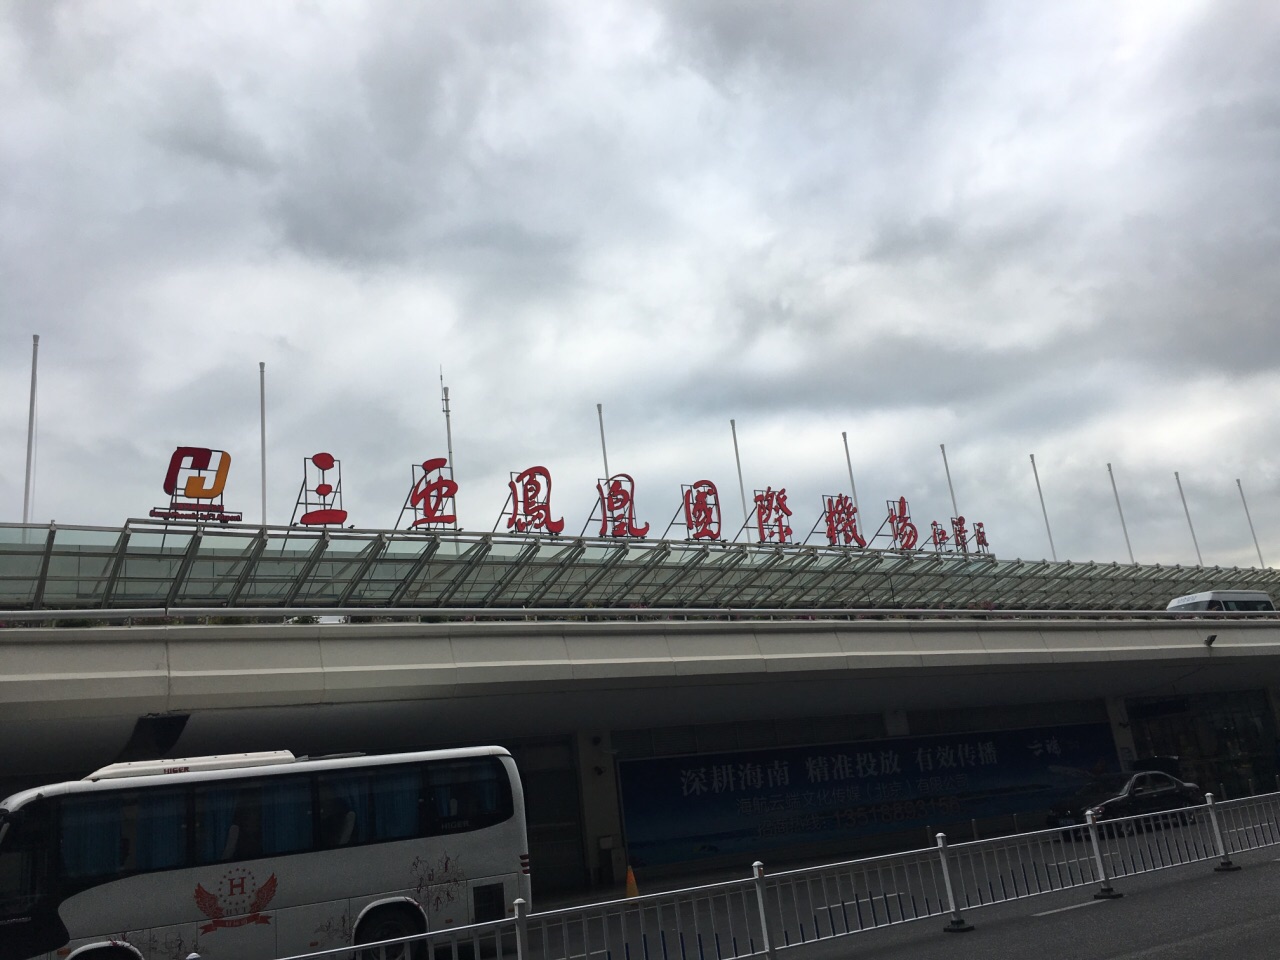 三亚凤凰国际机场 - 海口新华正达空港服务有限公司